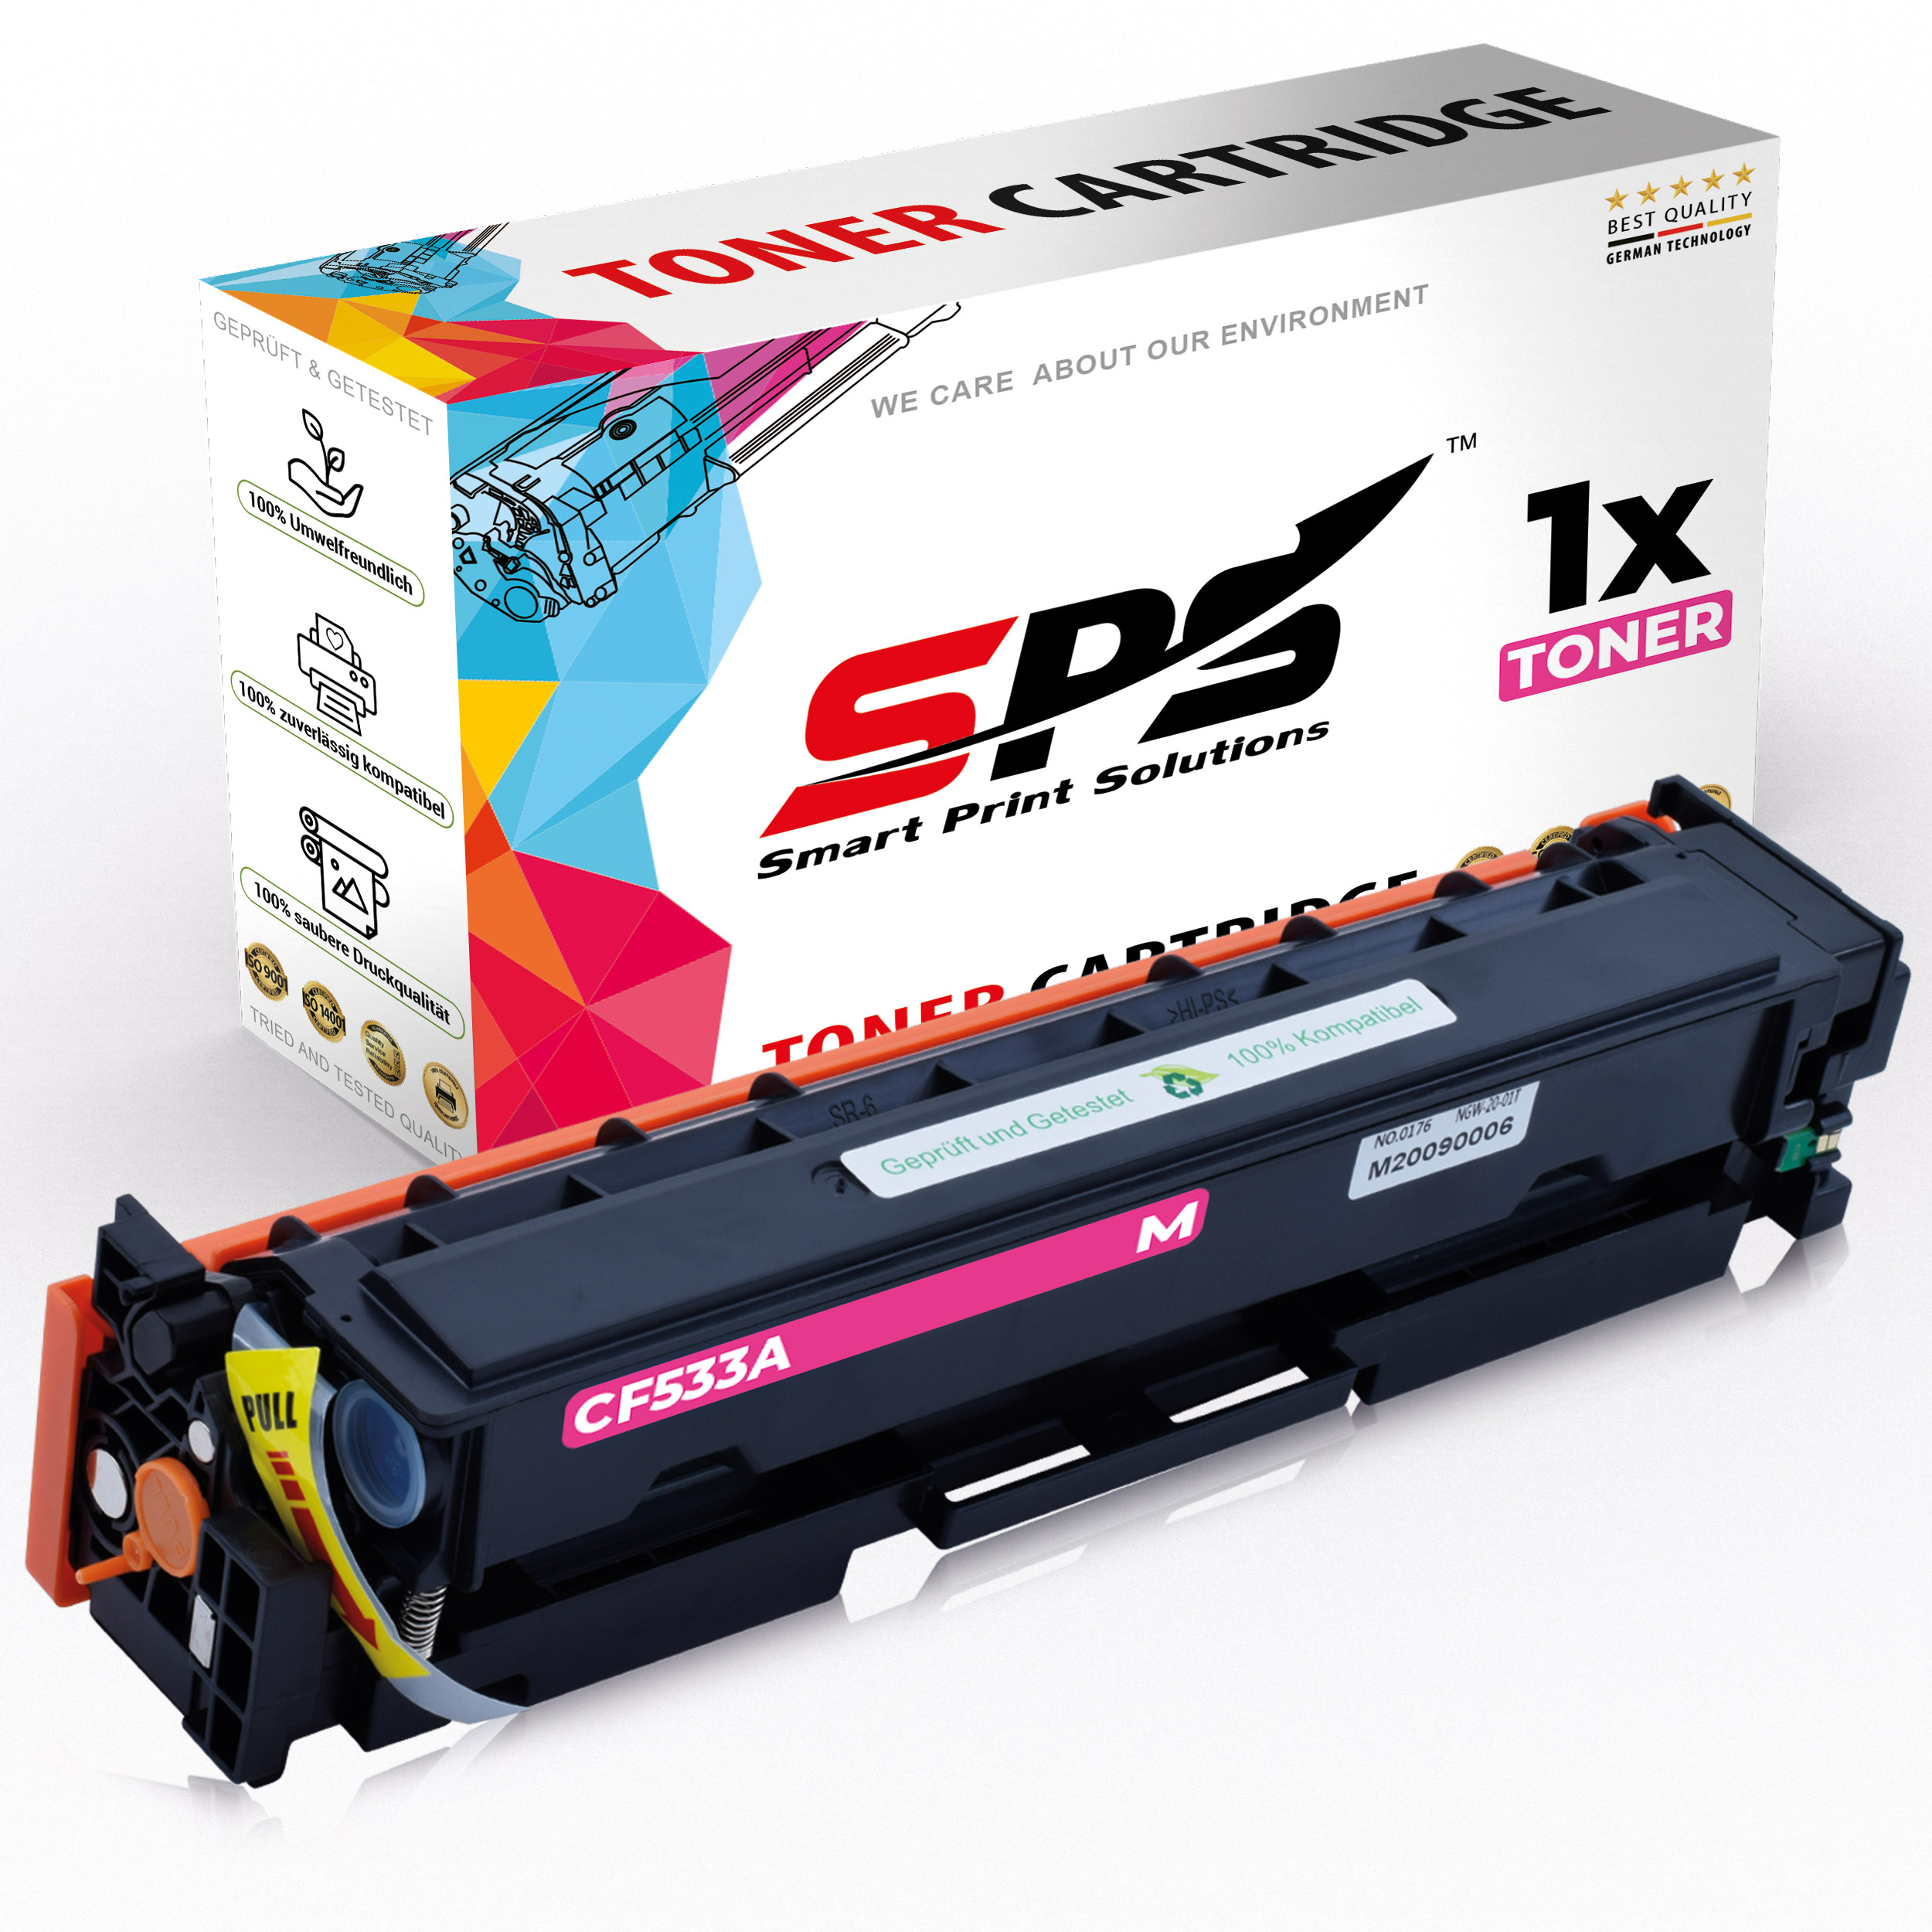 MFP S-16651 Pro Laserjet Magenta SPS Toner (205A / M180N) CF533A Color